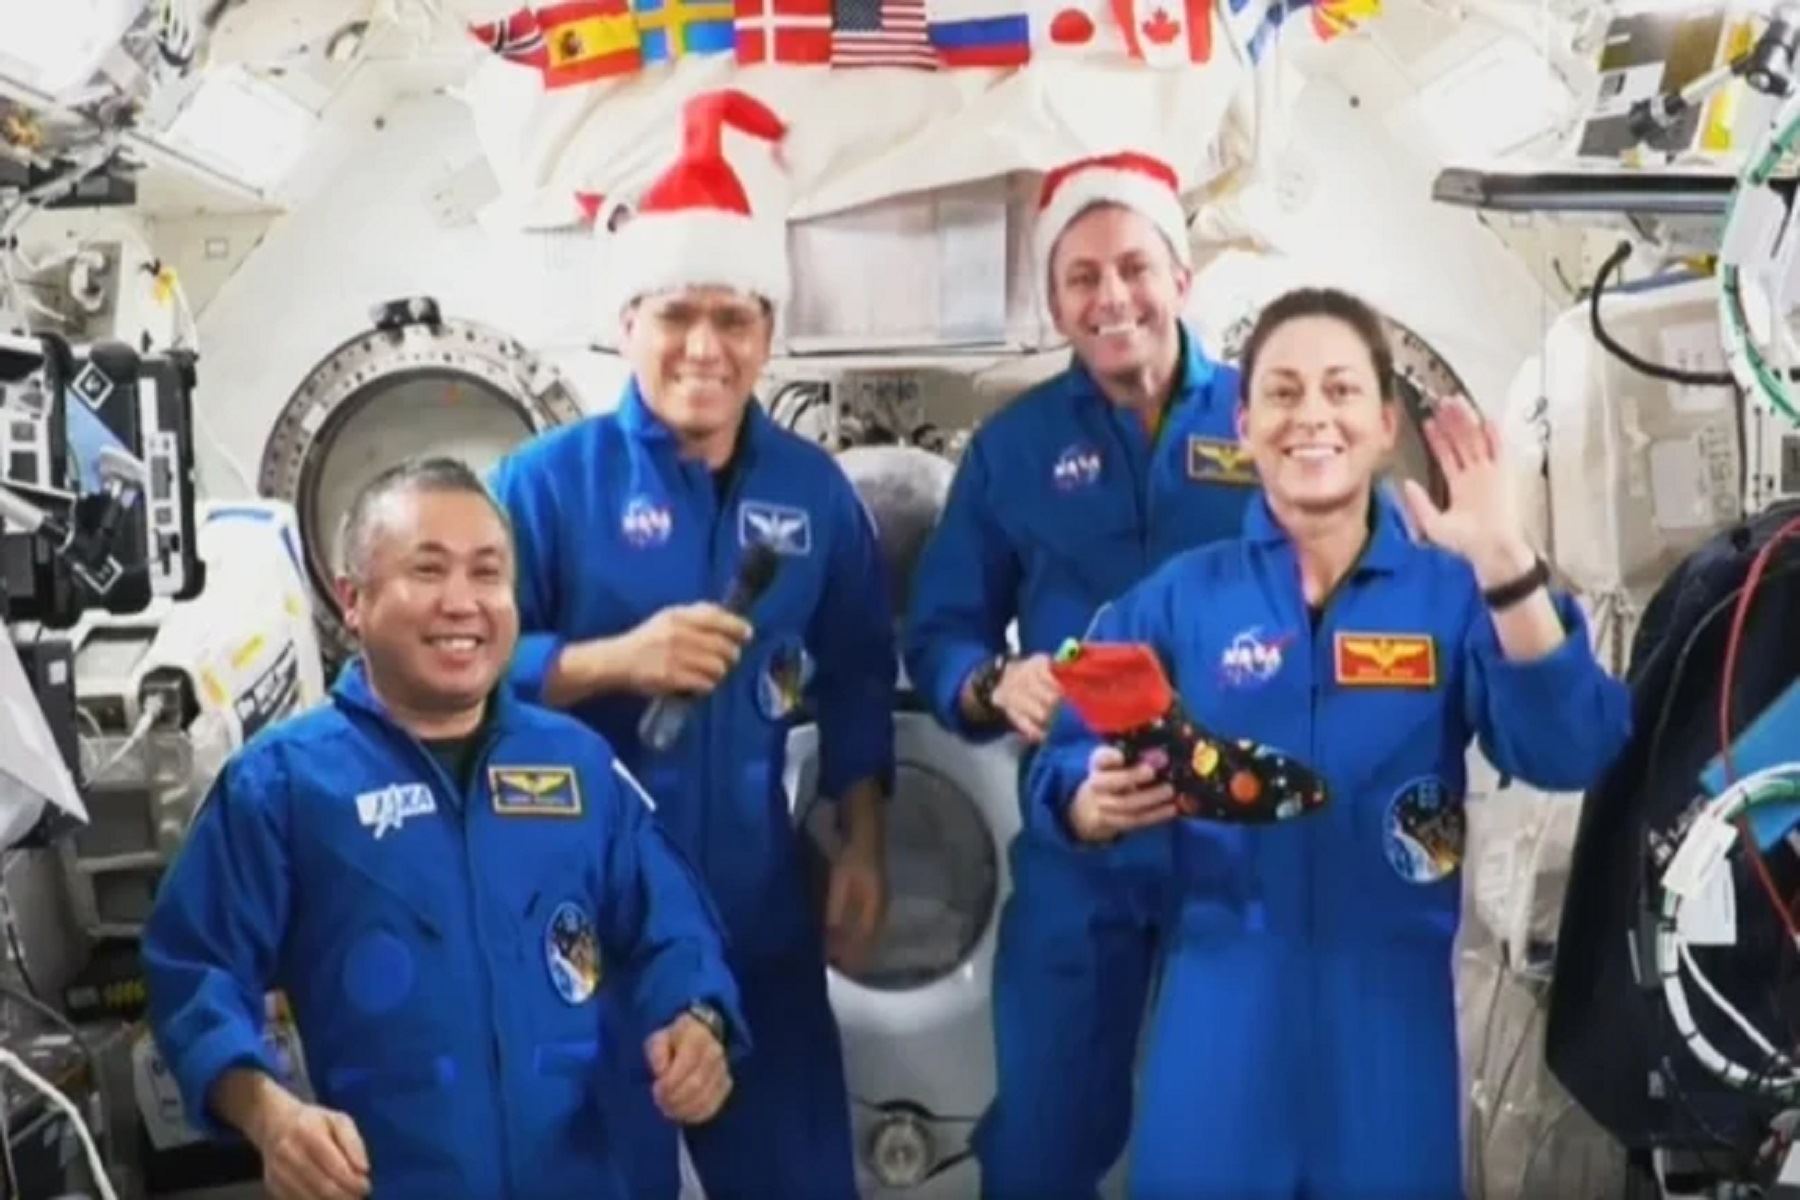 "Esperamos que sea una época de paz, alegría y de reencuentro con familiares y amigos. Estando en el espacio, extrañaremos mucho a nuestras familias", fue el mensaje de la tripulación de astronautas.